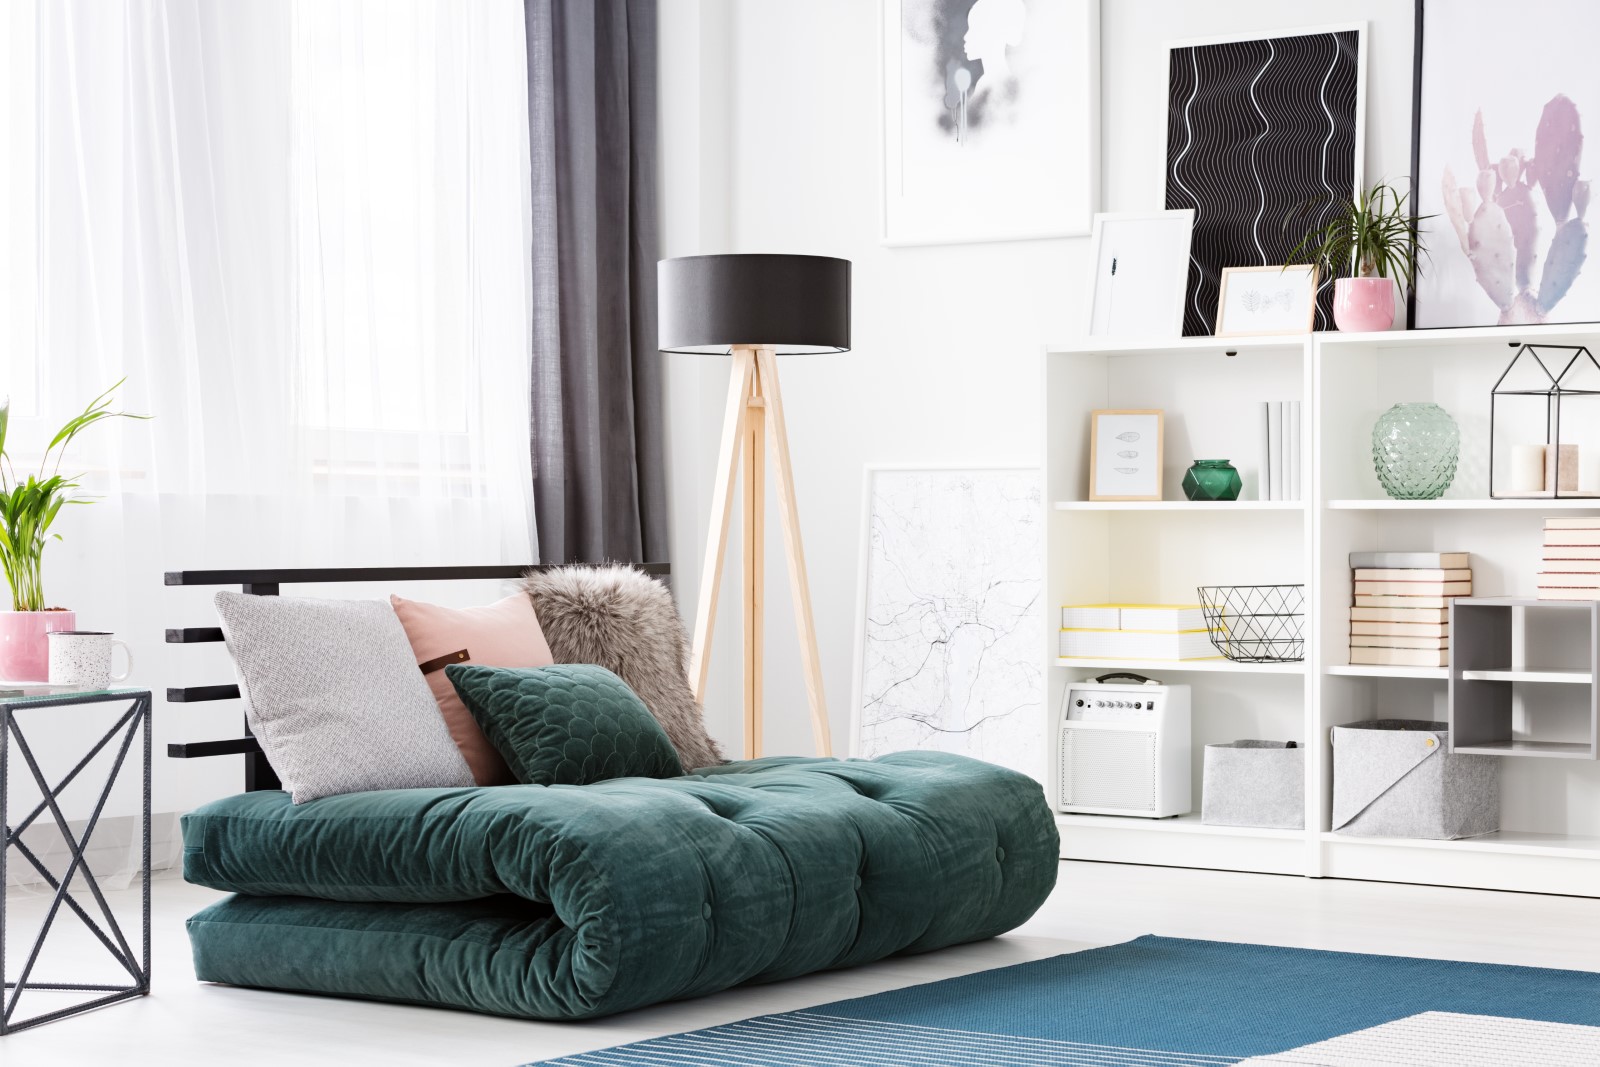 green-futon-in-modern-bedroom-WALF4EV.jpg